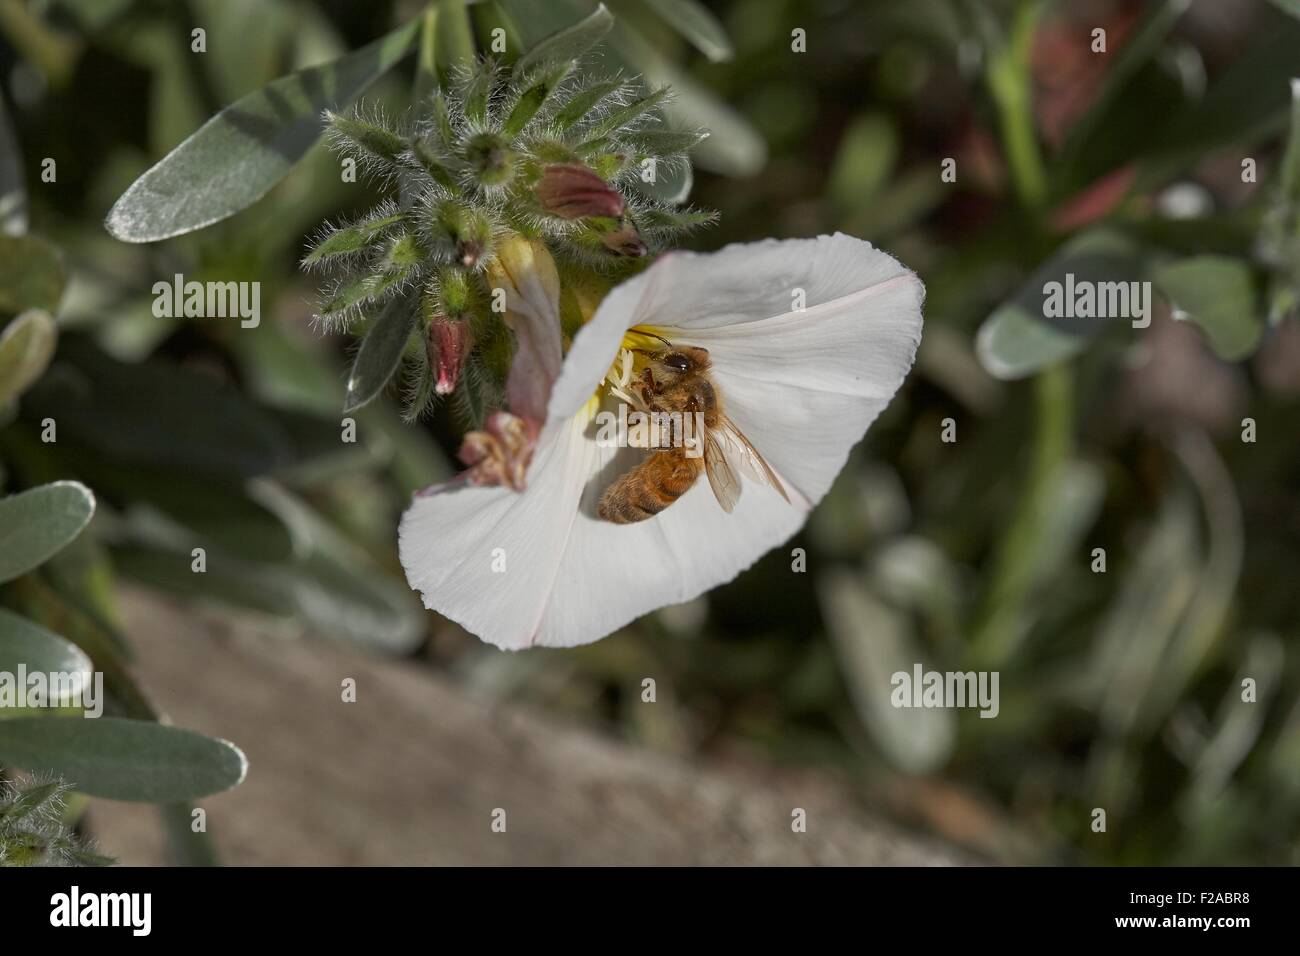 L'abeille Apis mellifera européenne la collecte de nectar Convolvulus cneorum, également connu sous le nom de silverbush, est une espèce de planifier Banque D'Images